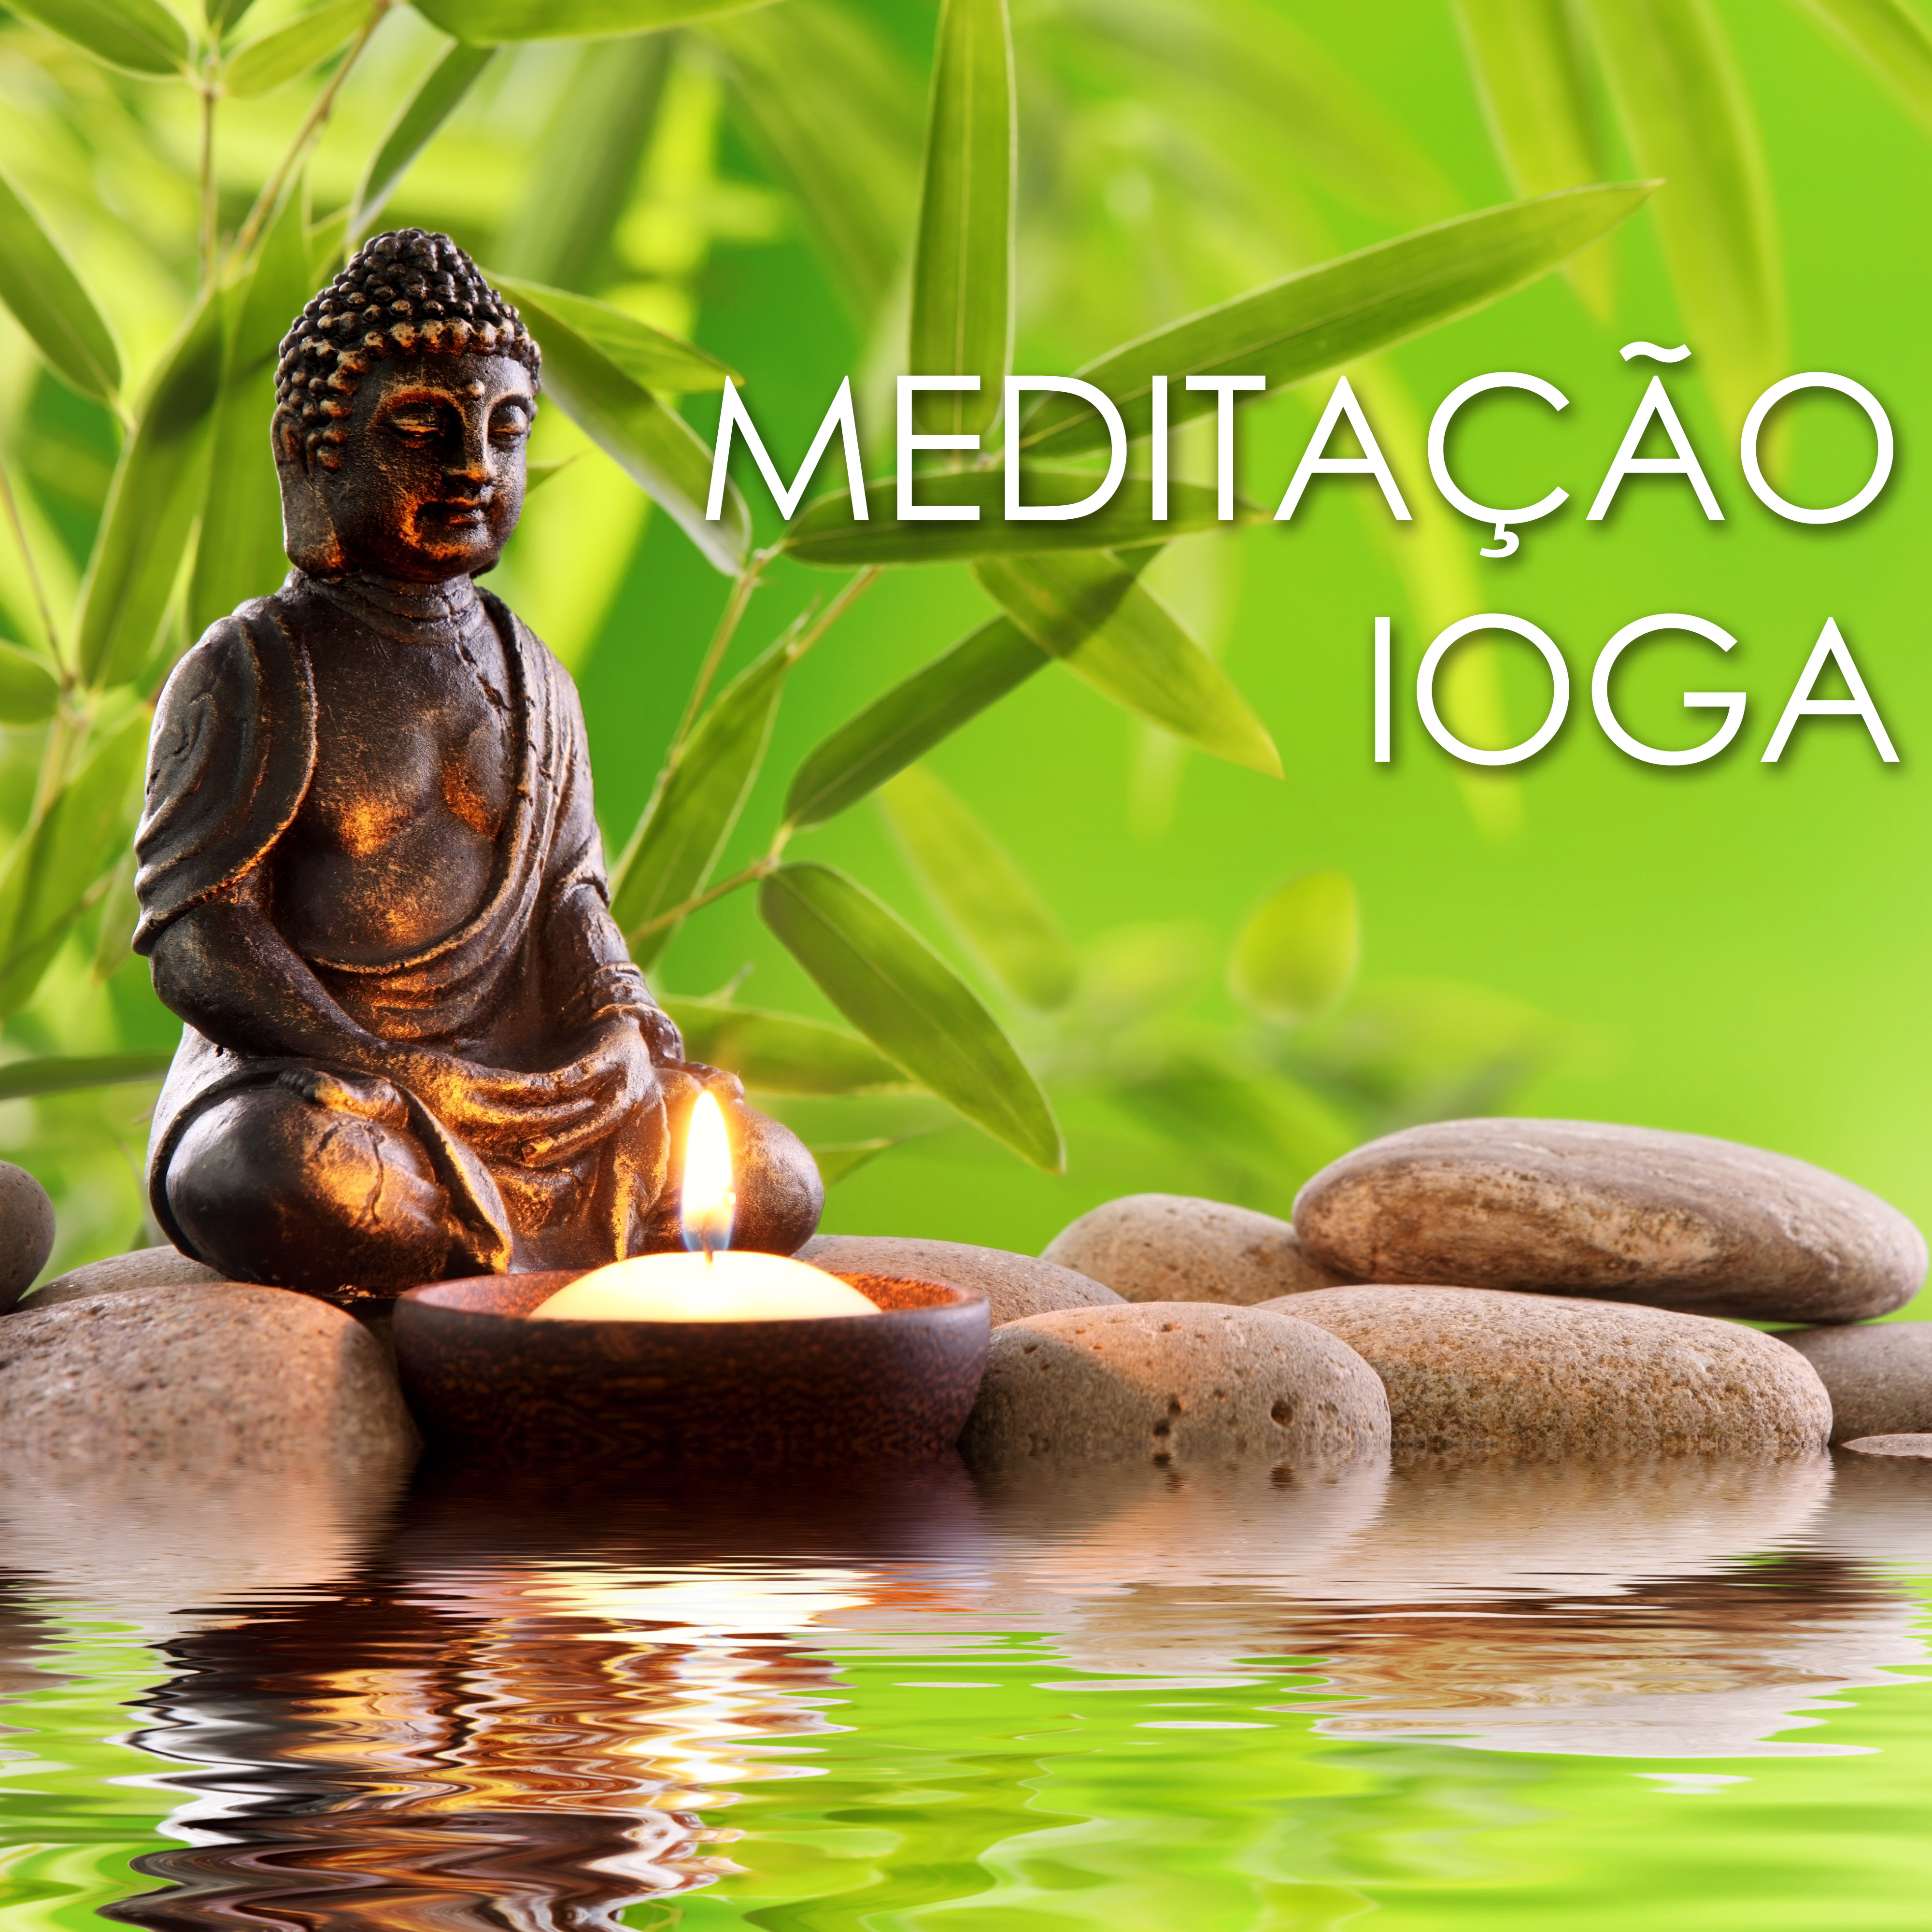 Meditação Ioga - Sons da Natureza para Spa, Relaxamento, Massagem e Relaxamento